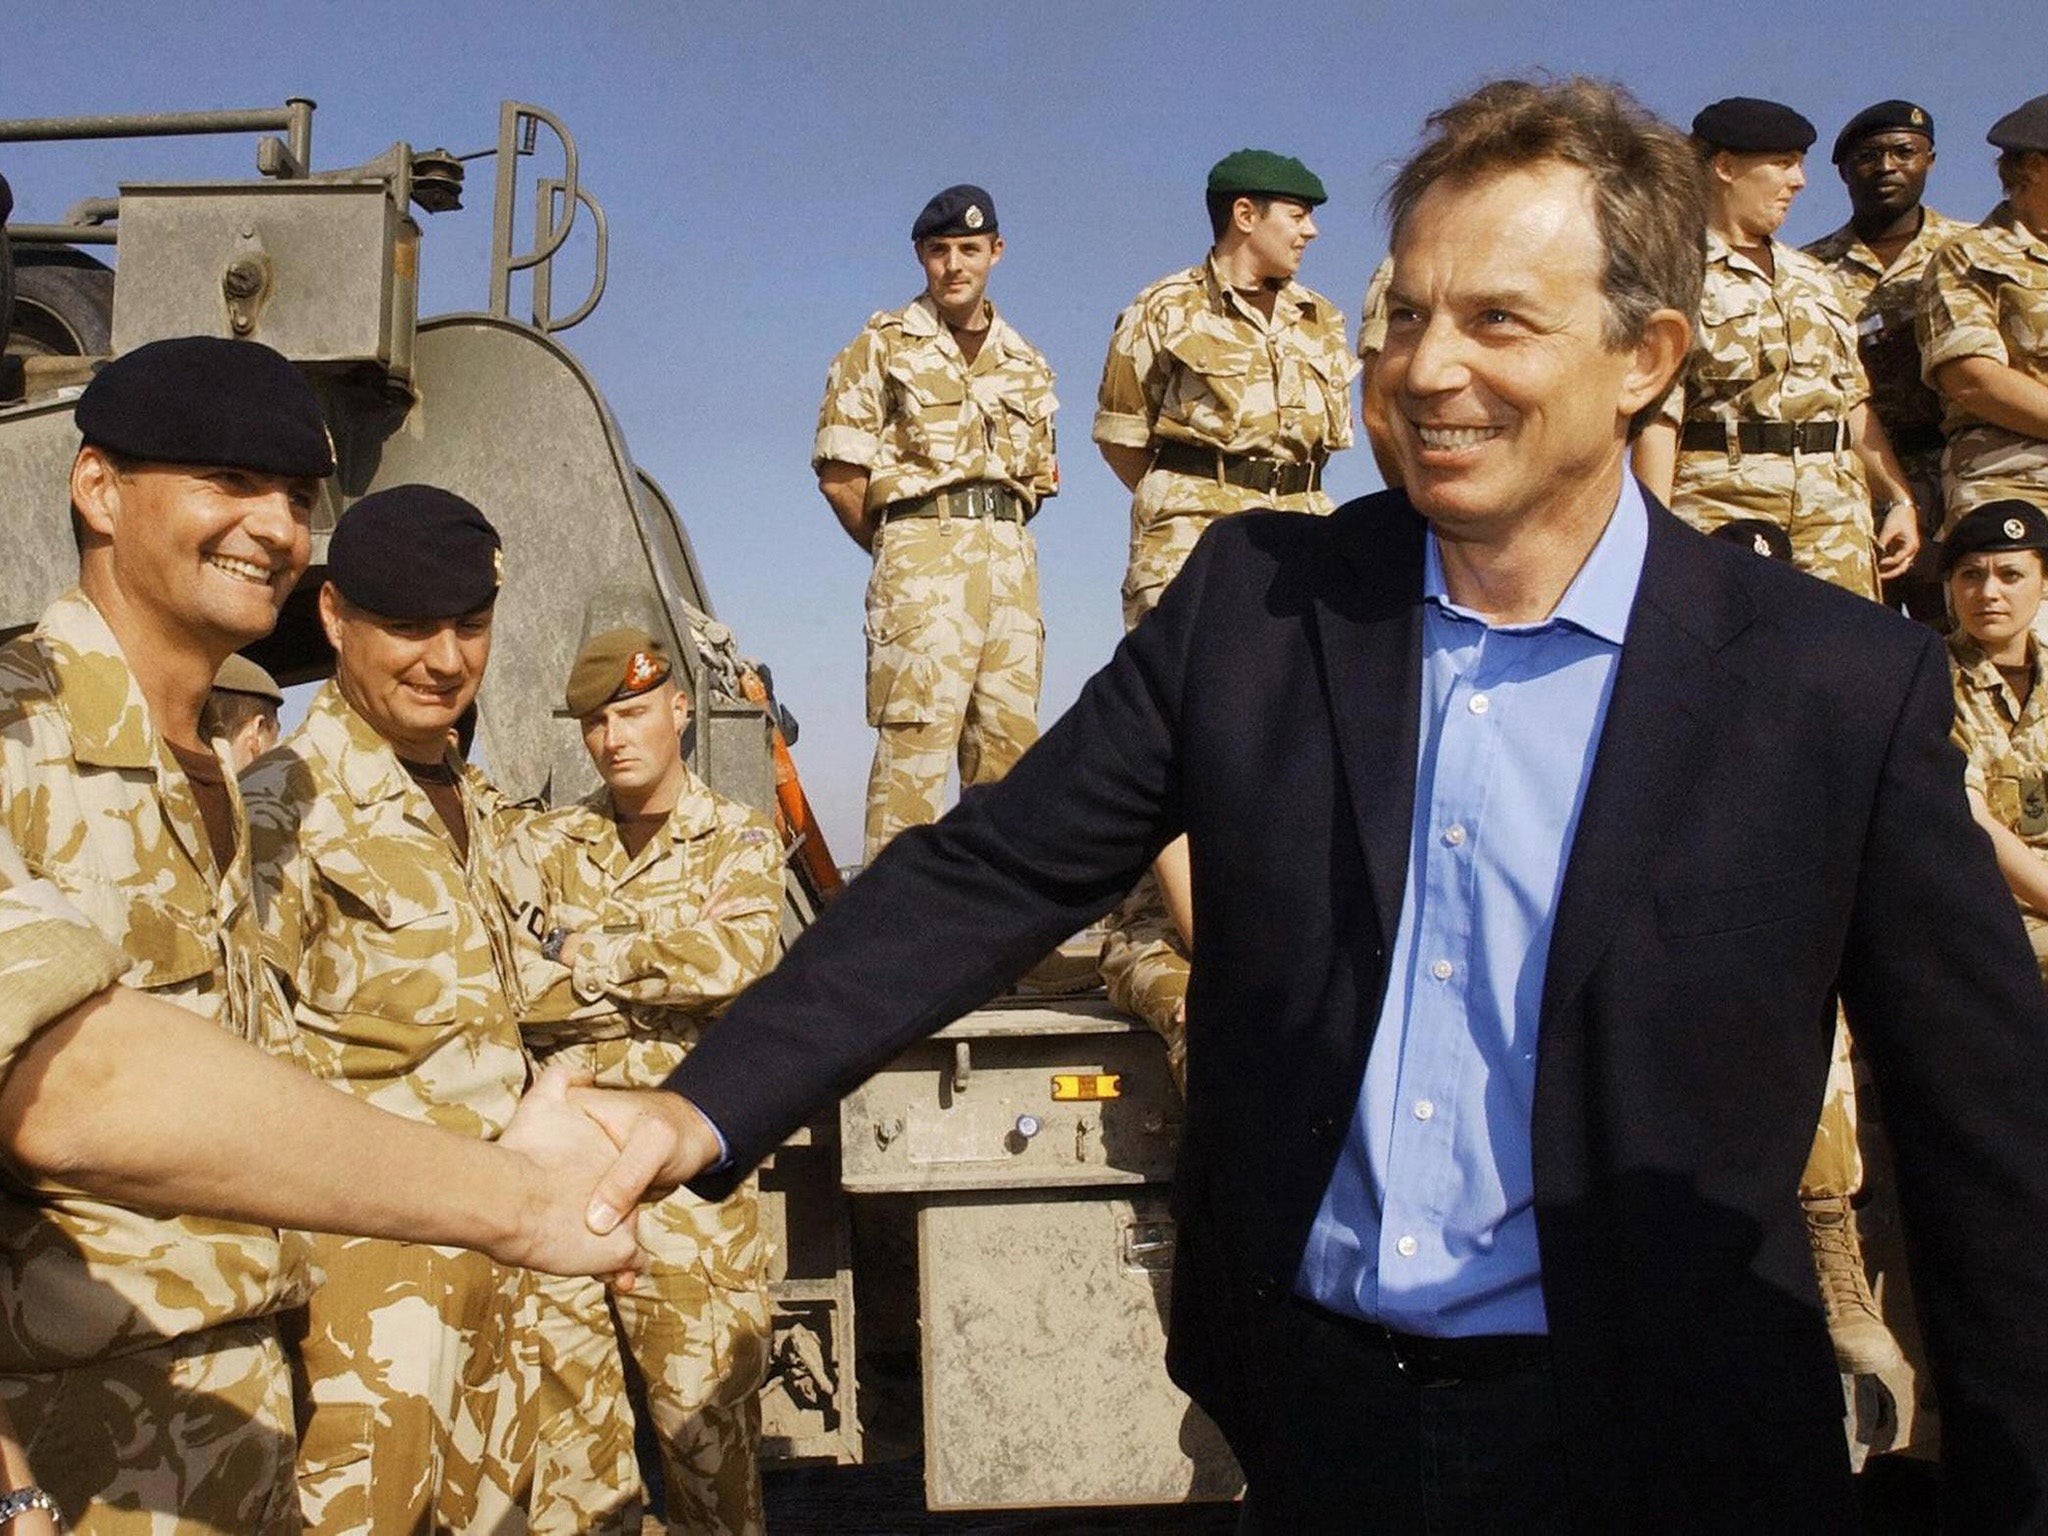 Tony Blair meeting troops in Basra in January 2004